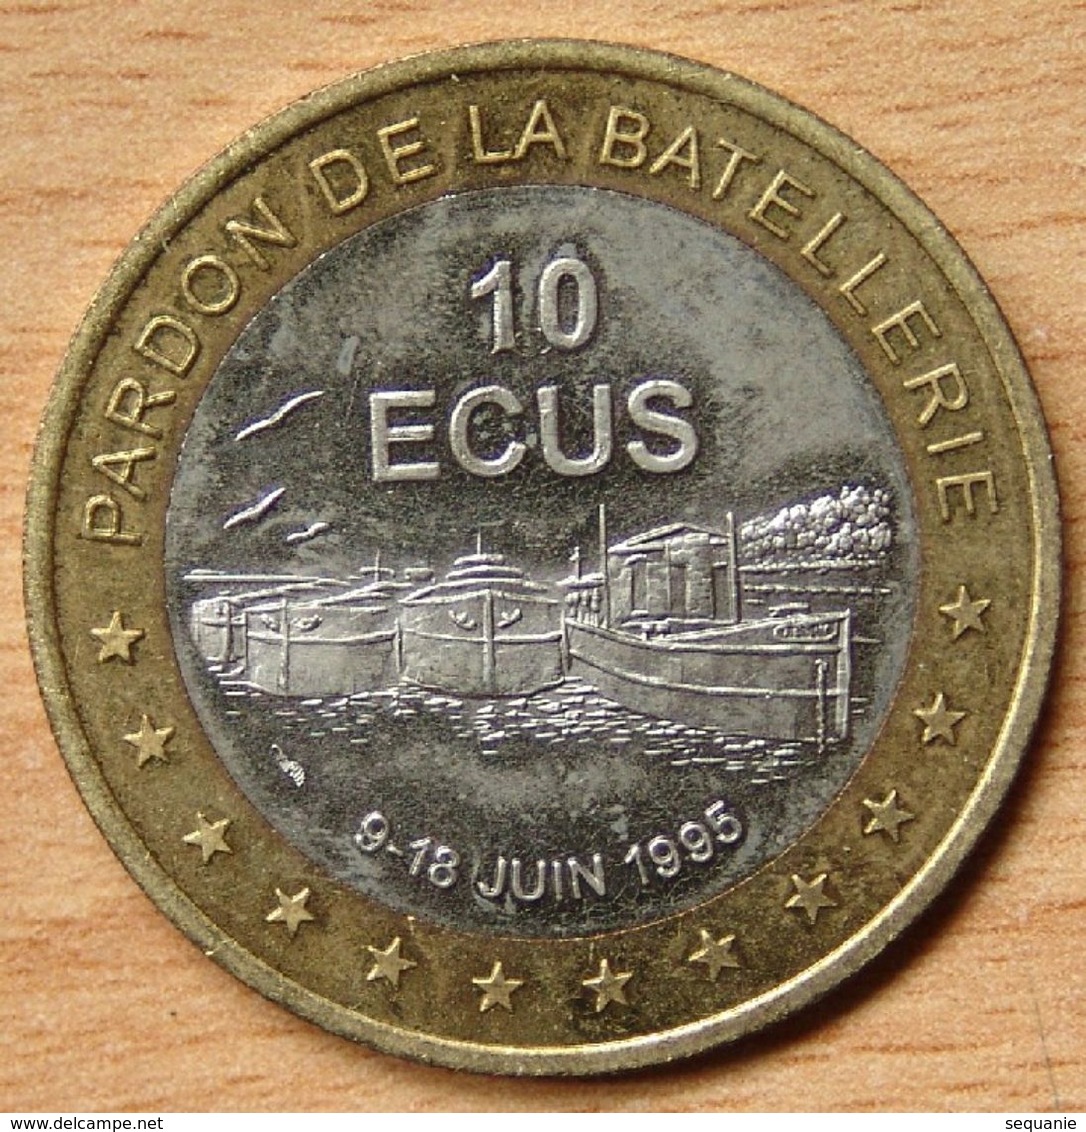 France 10 Ecus 1995 Bimétallique Conflans-Sainte-Honorine (78)/ Pardon De La Batellerie / - Euros De Las Ciudades